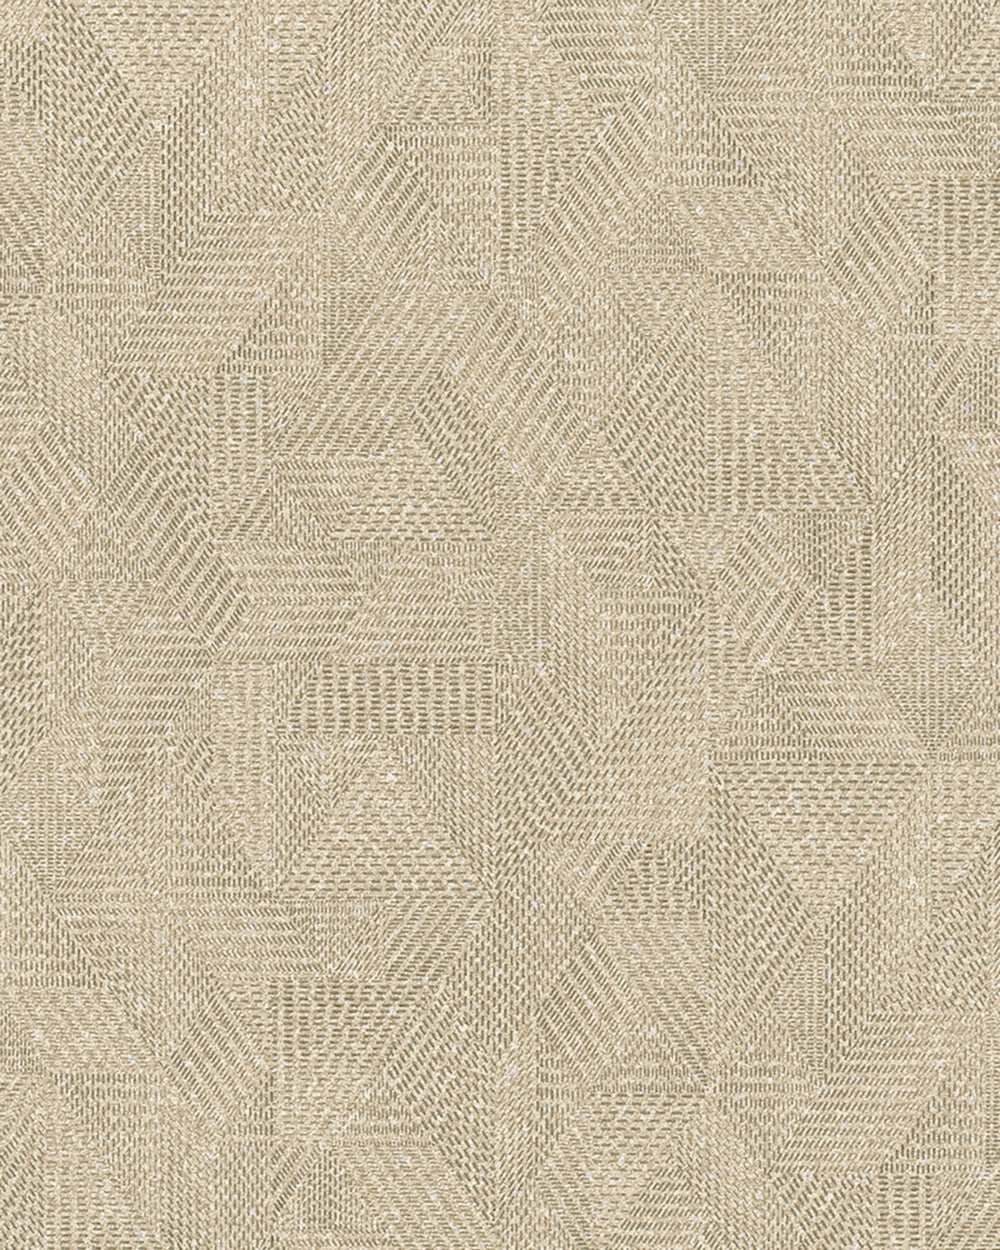 Avalon - Textured Cross Hatched Geo bold wallpaper Marburg Roll Beige  31618